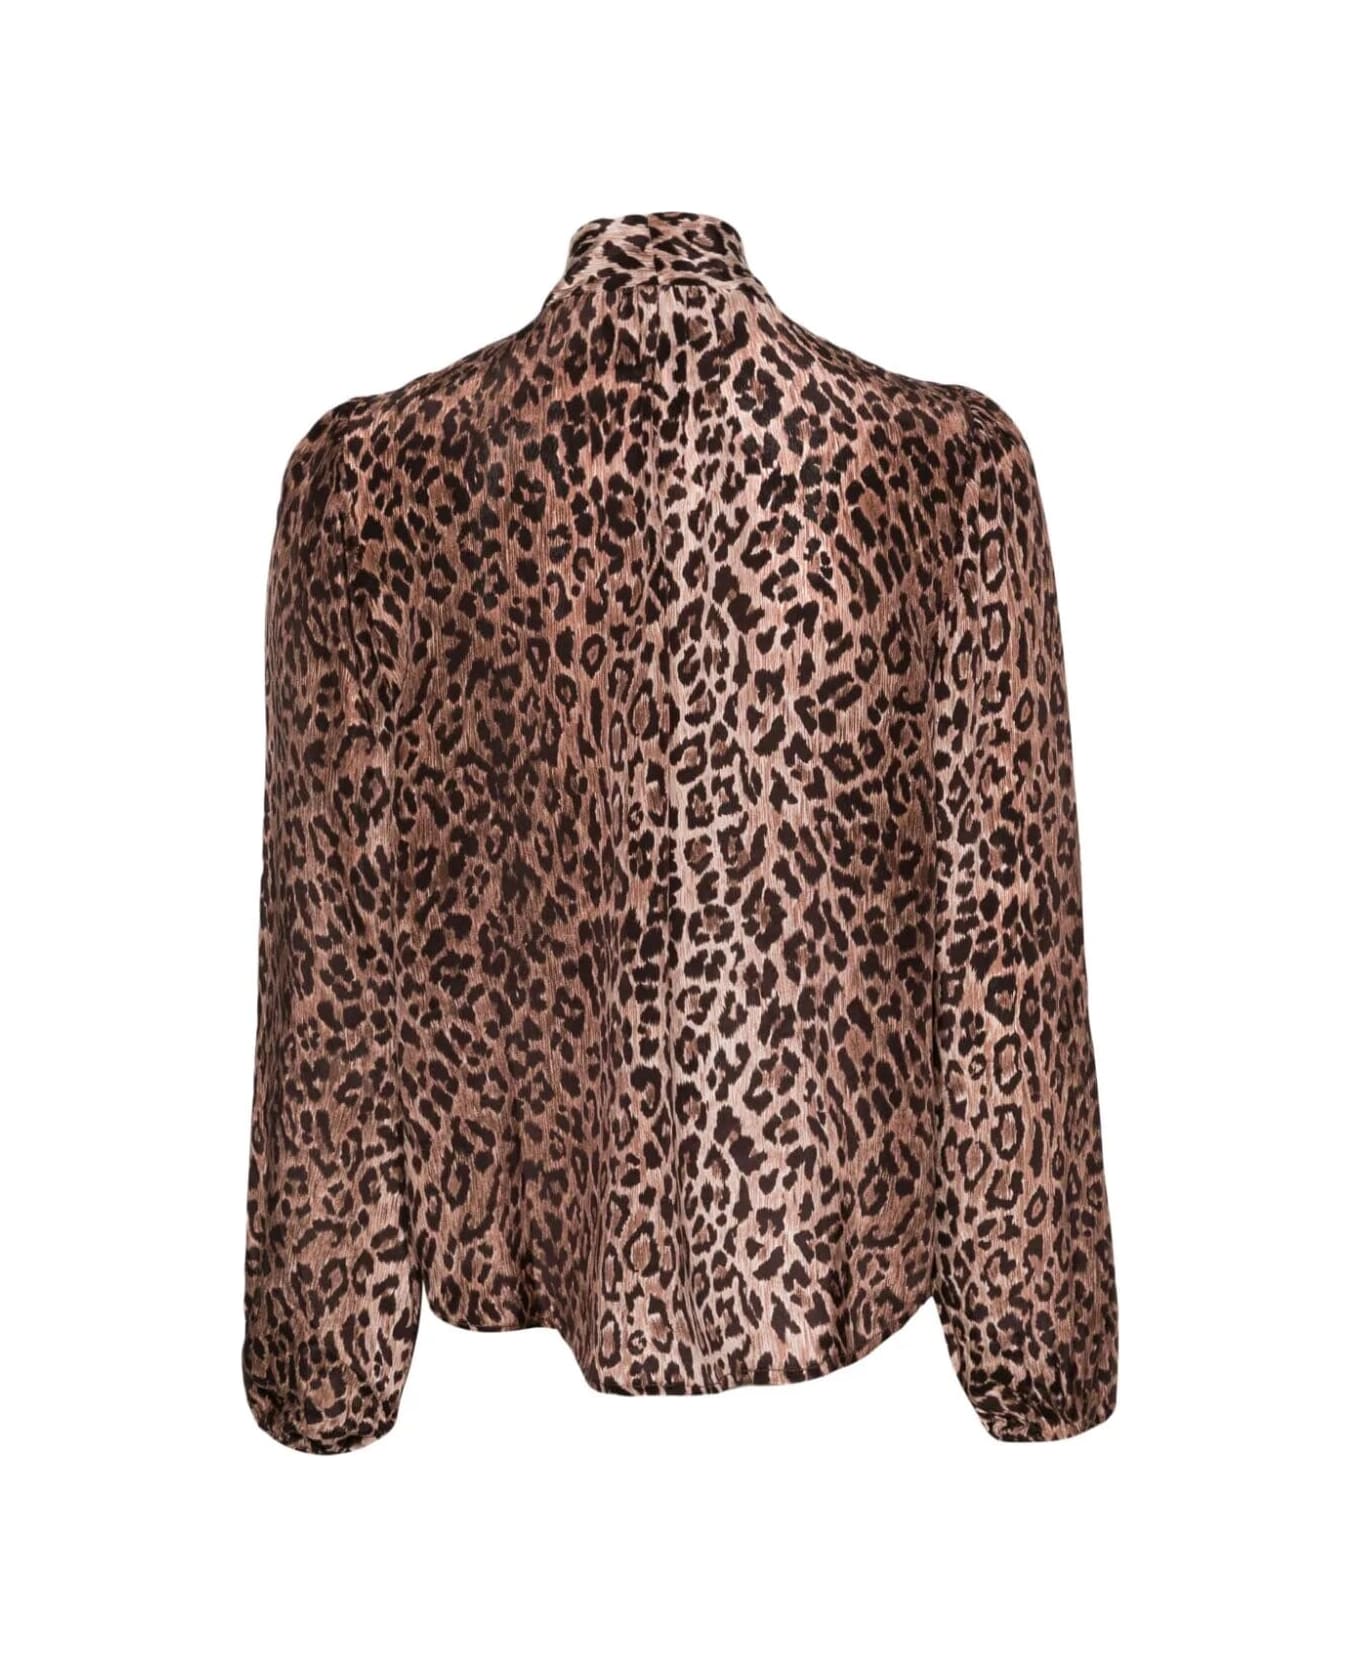 RIXO Camicia Con Sciarpa - Leopard ブラウス